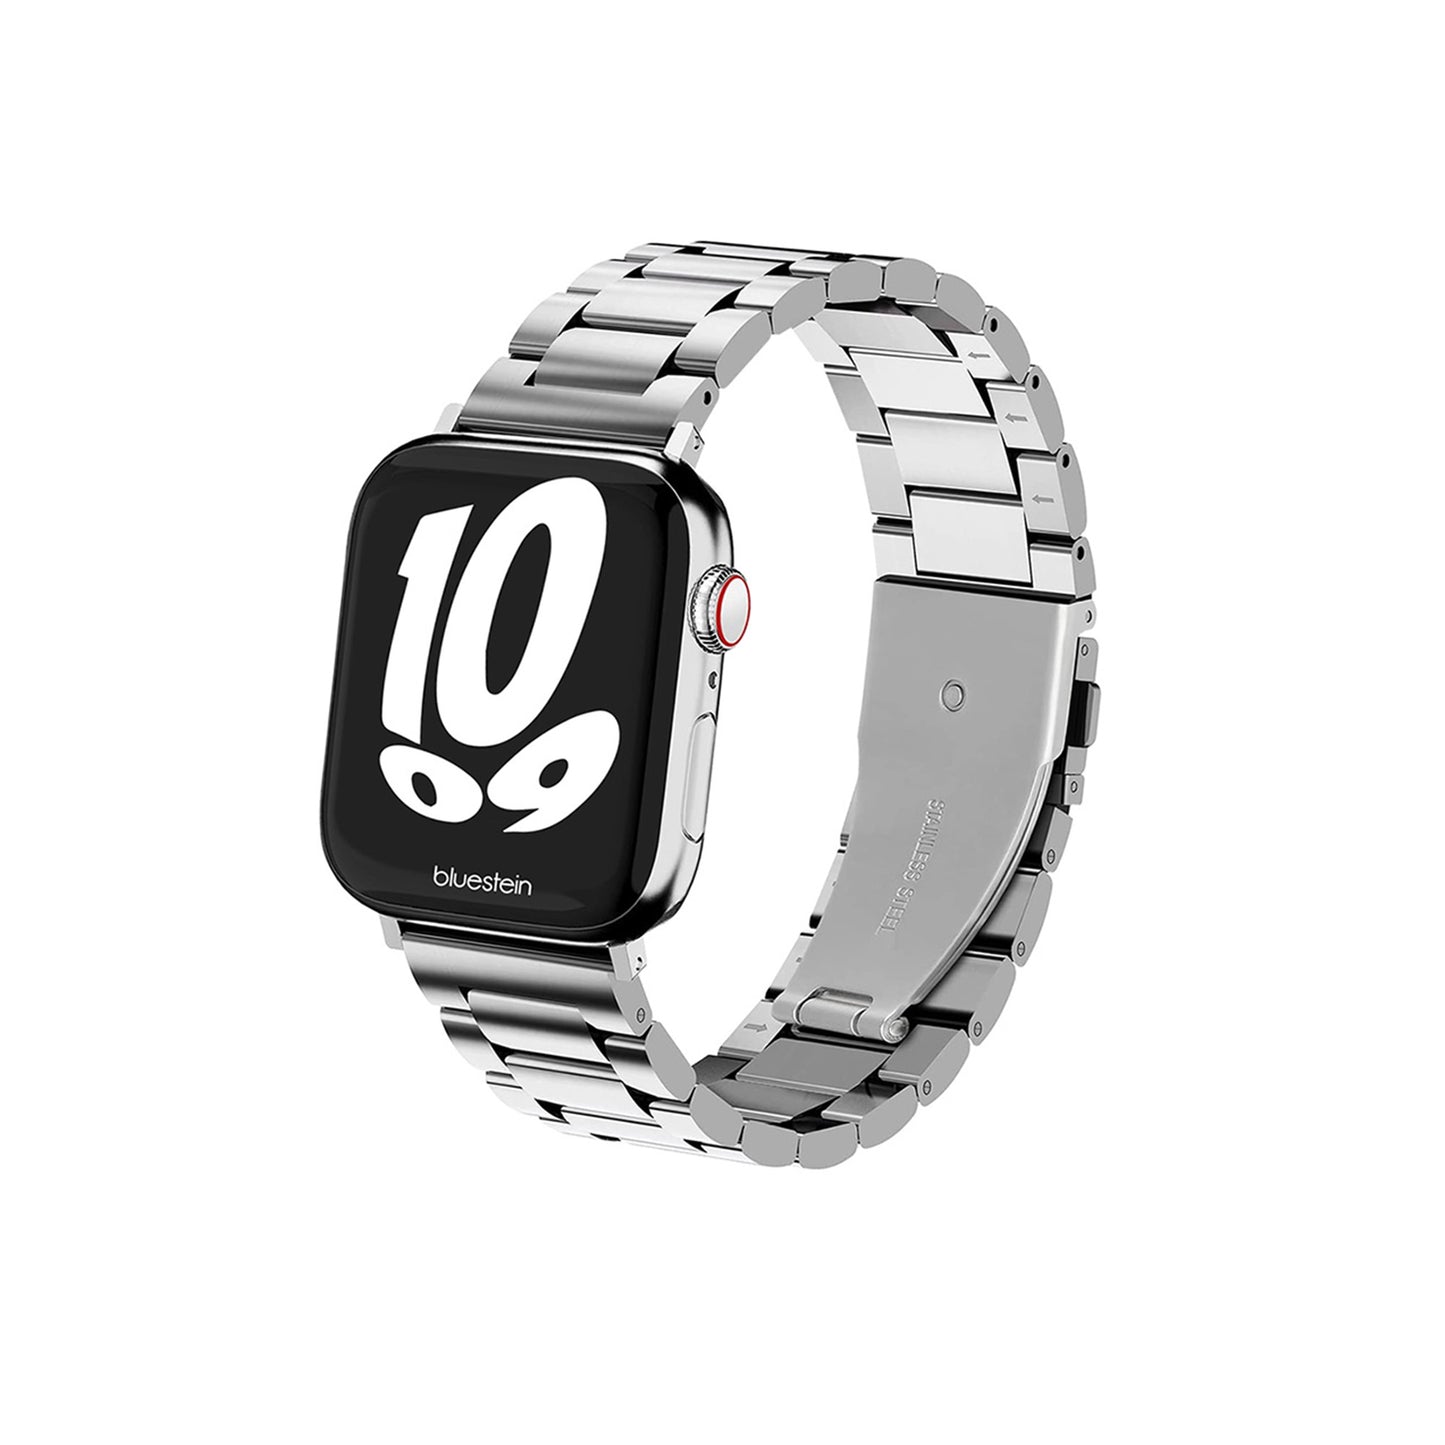 Metall Armband Prestige für Apple Watch - Bluestein